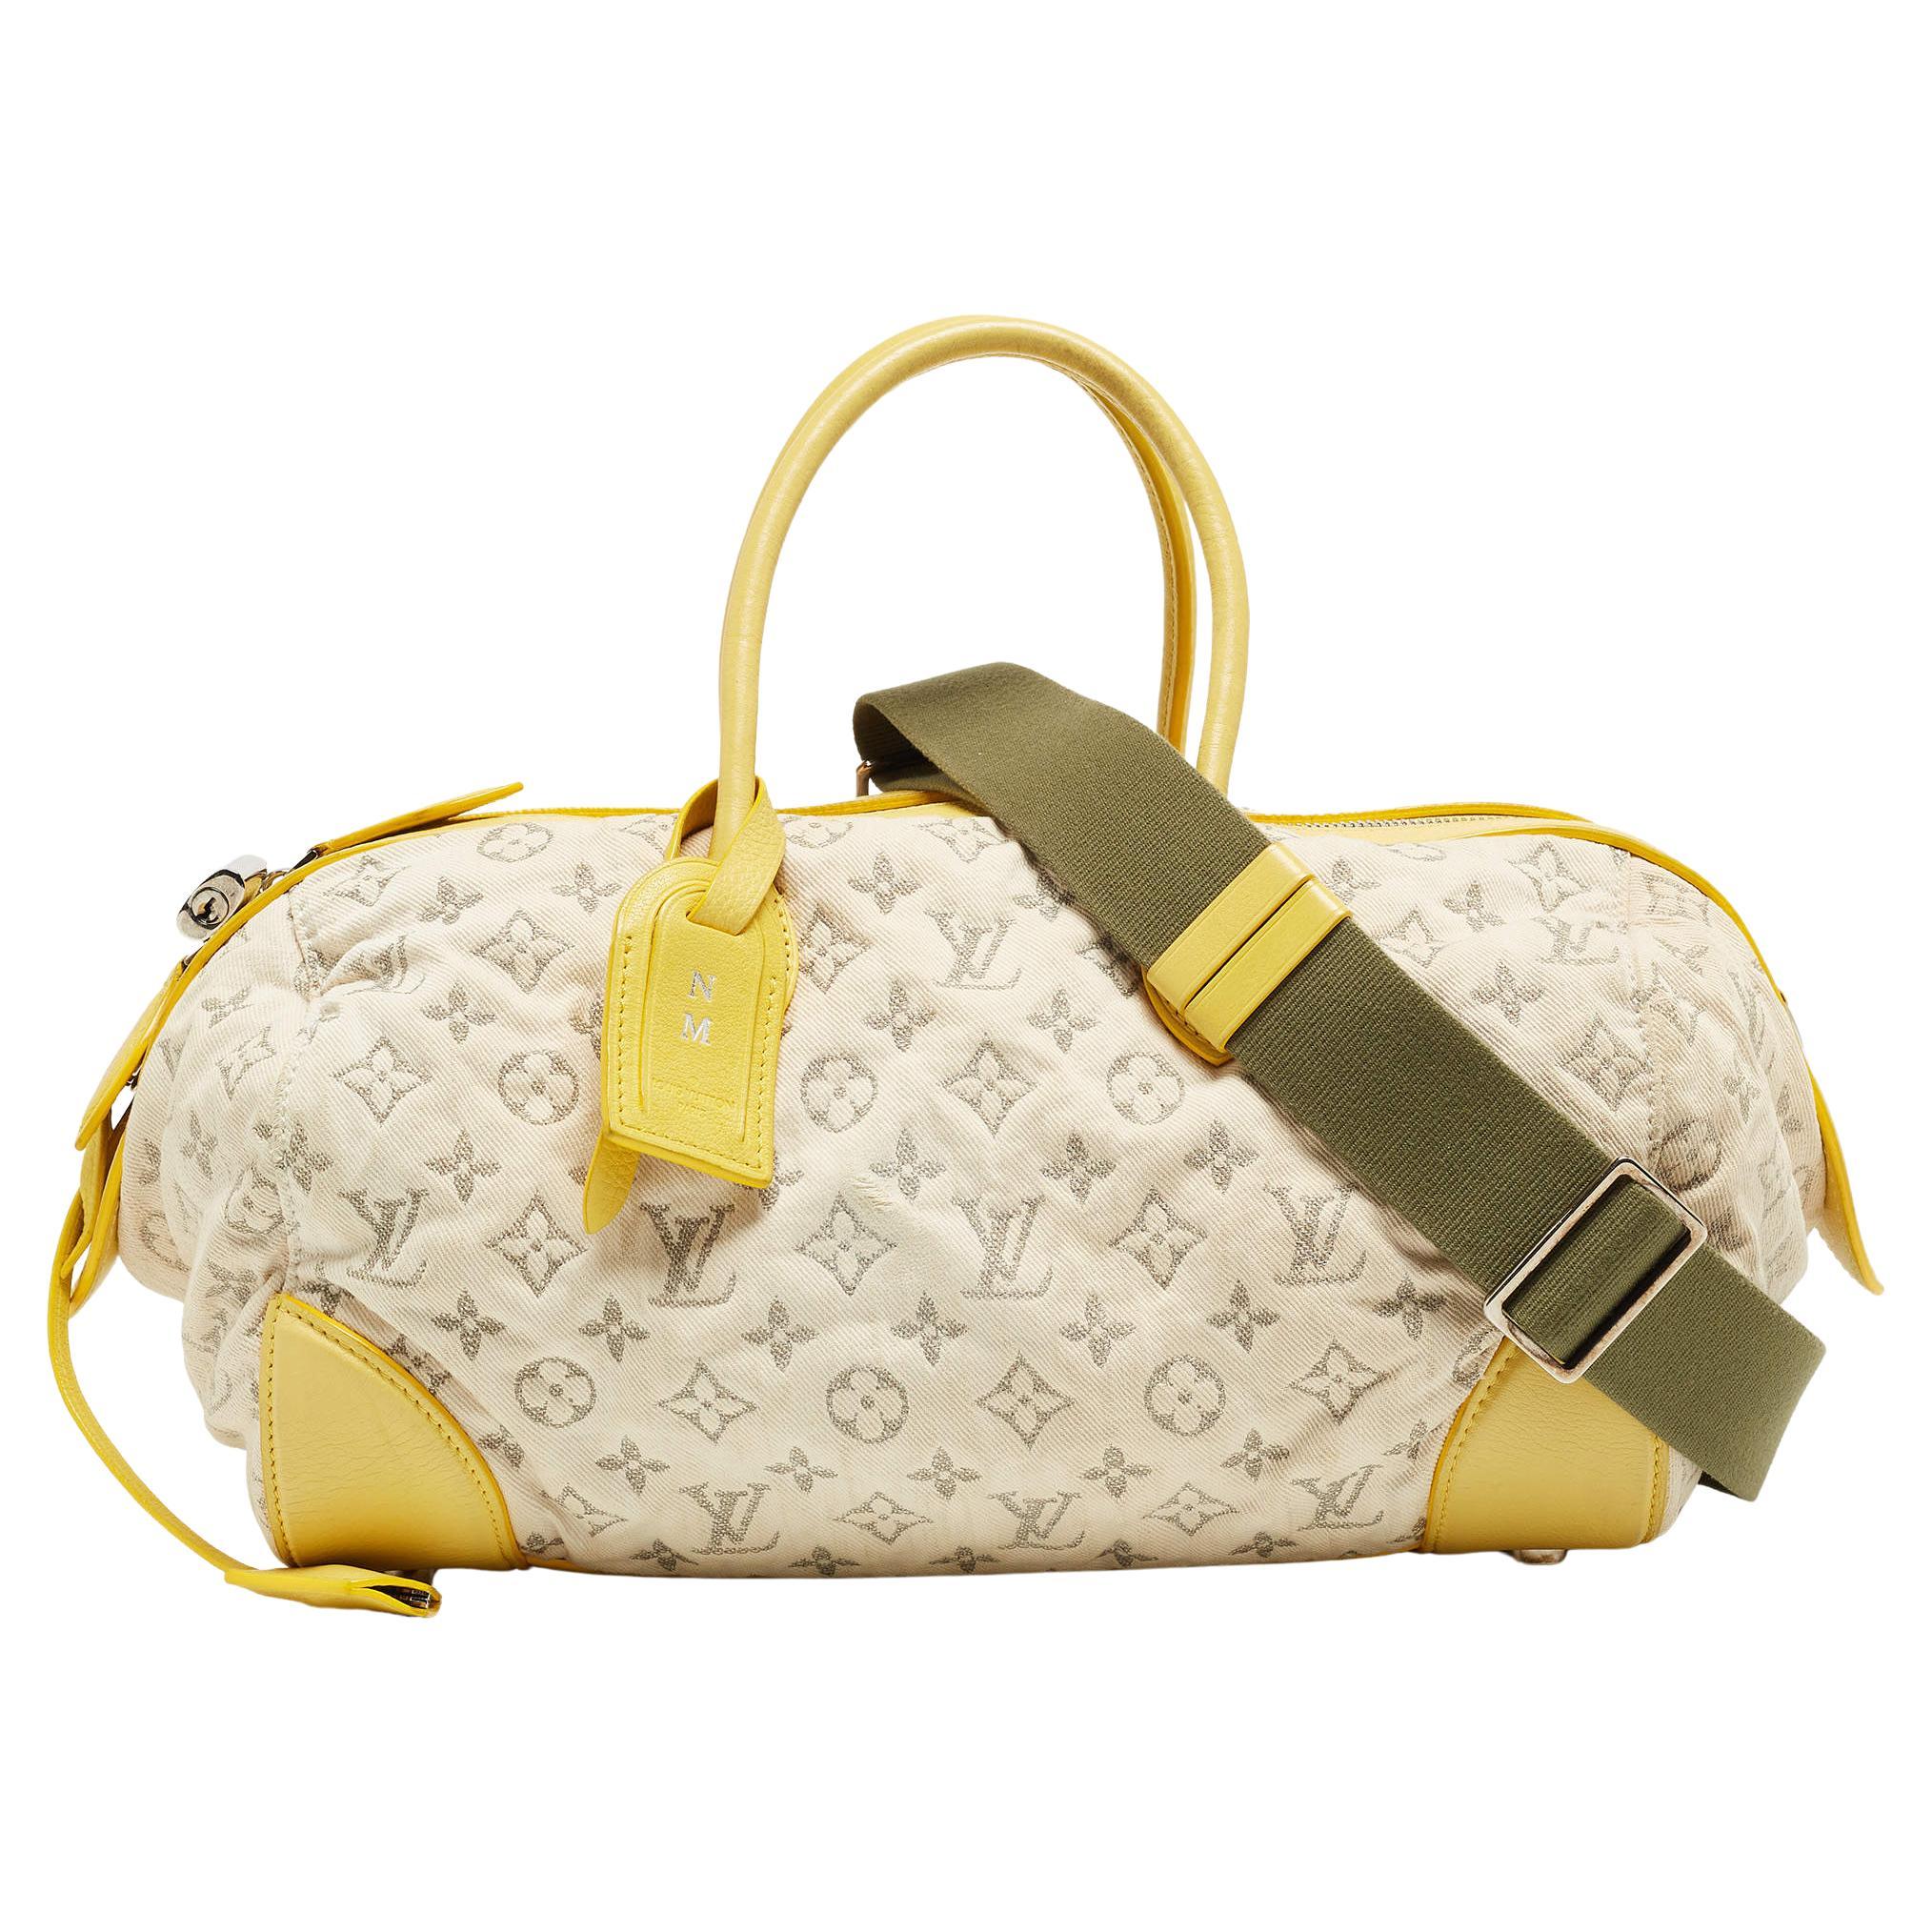 Louis Vuitton sac rond Speedy jaune monogrammé en denim, édition limitée en vente